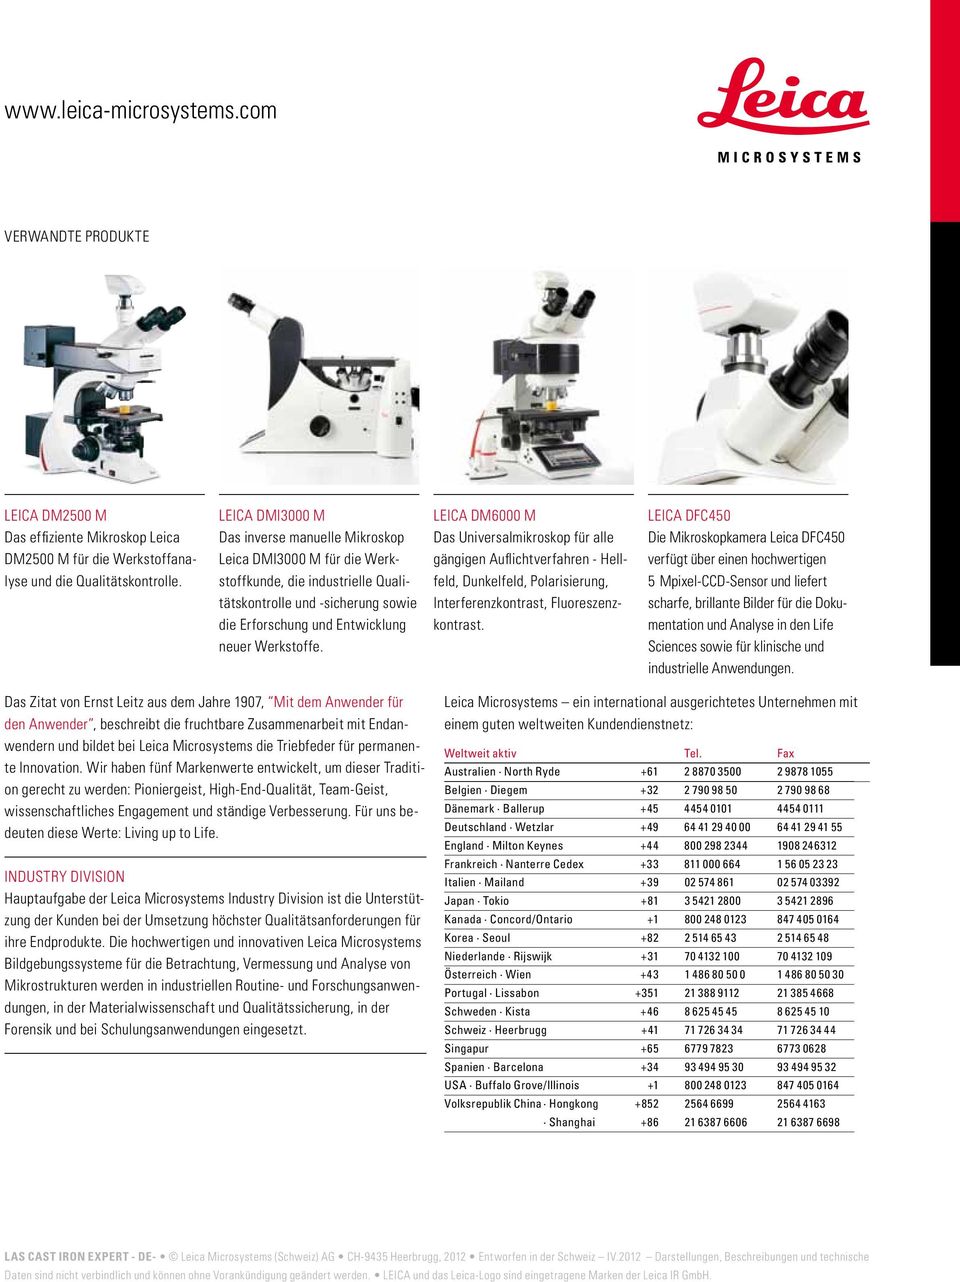 LEICA DM6000 M Das Universalmikroskop für alle gängigen Auflichtverfahren - Hellfeld, Dunkelfeld, Polarisierung, Interferenzkontrast, Fluoreszenzkontrast.